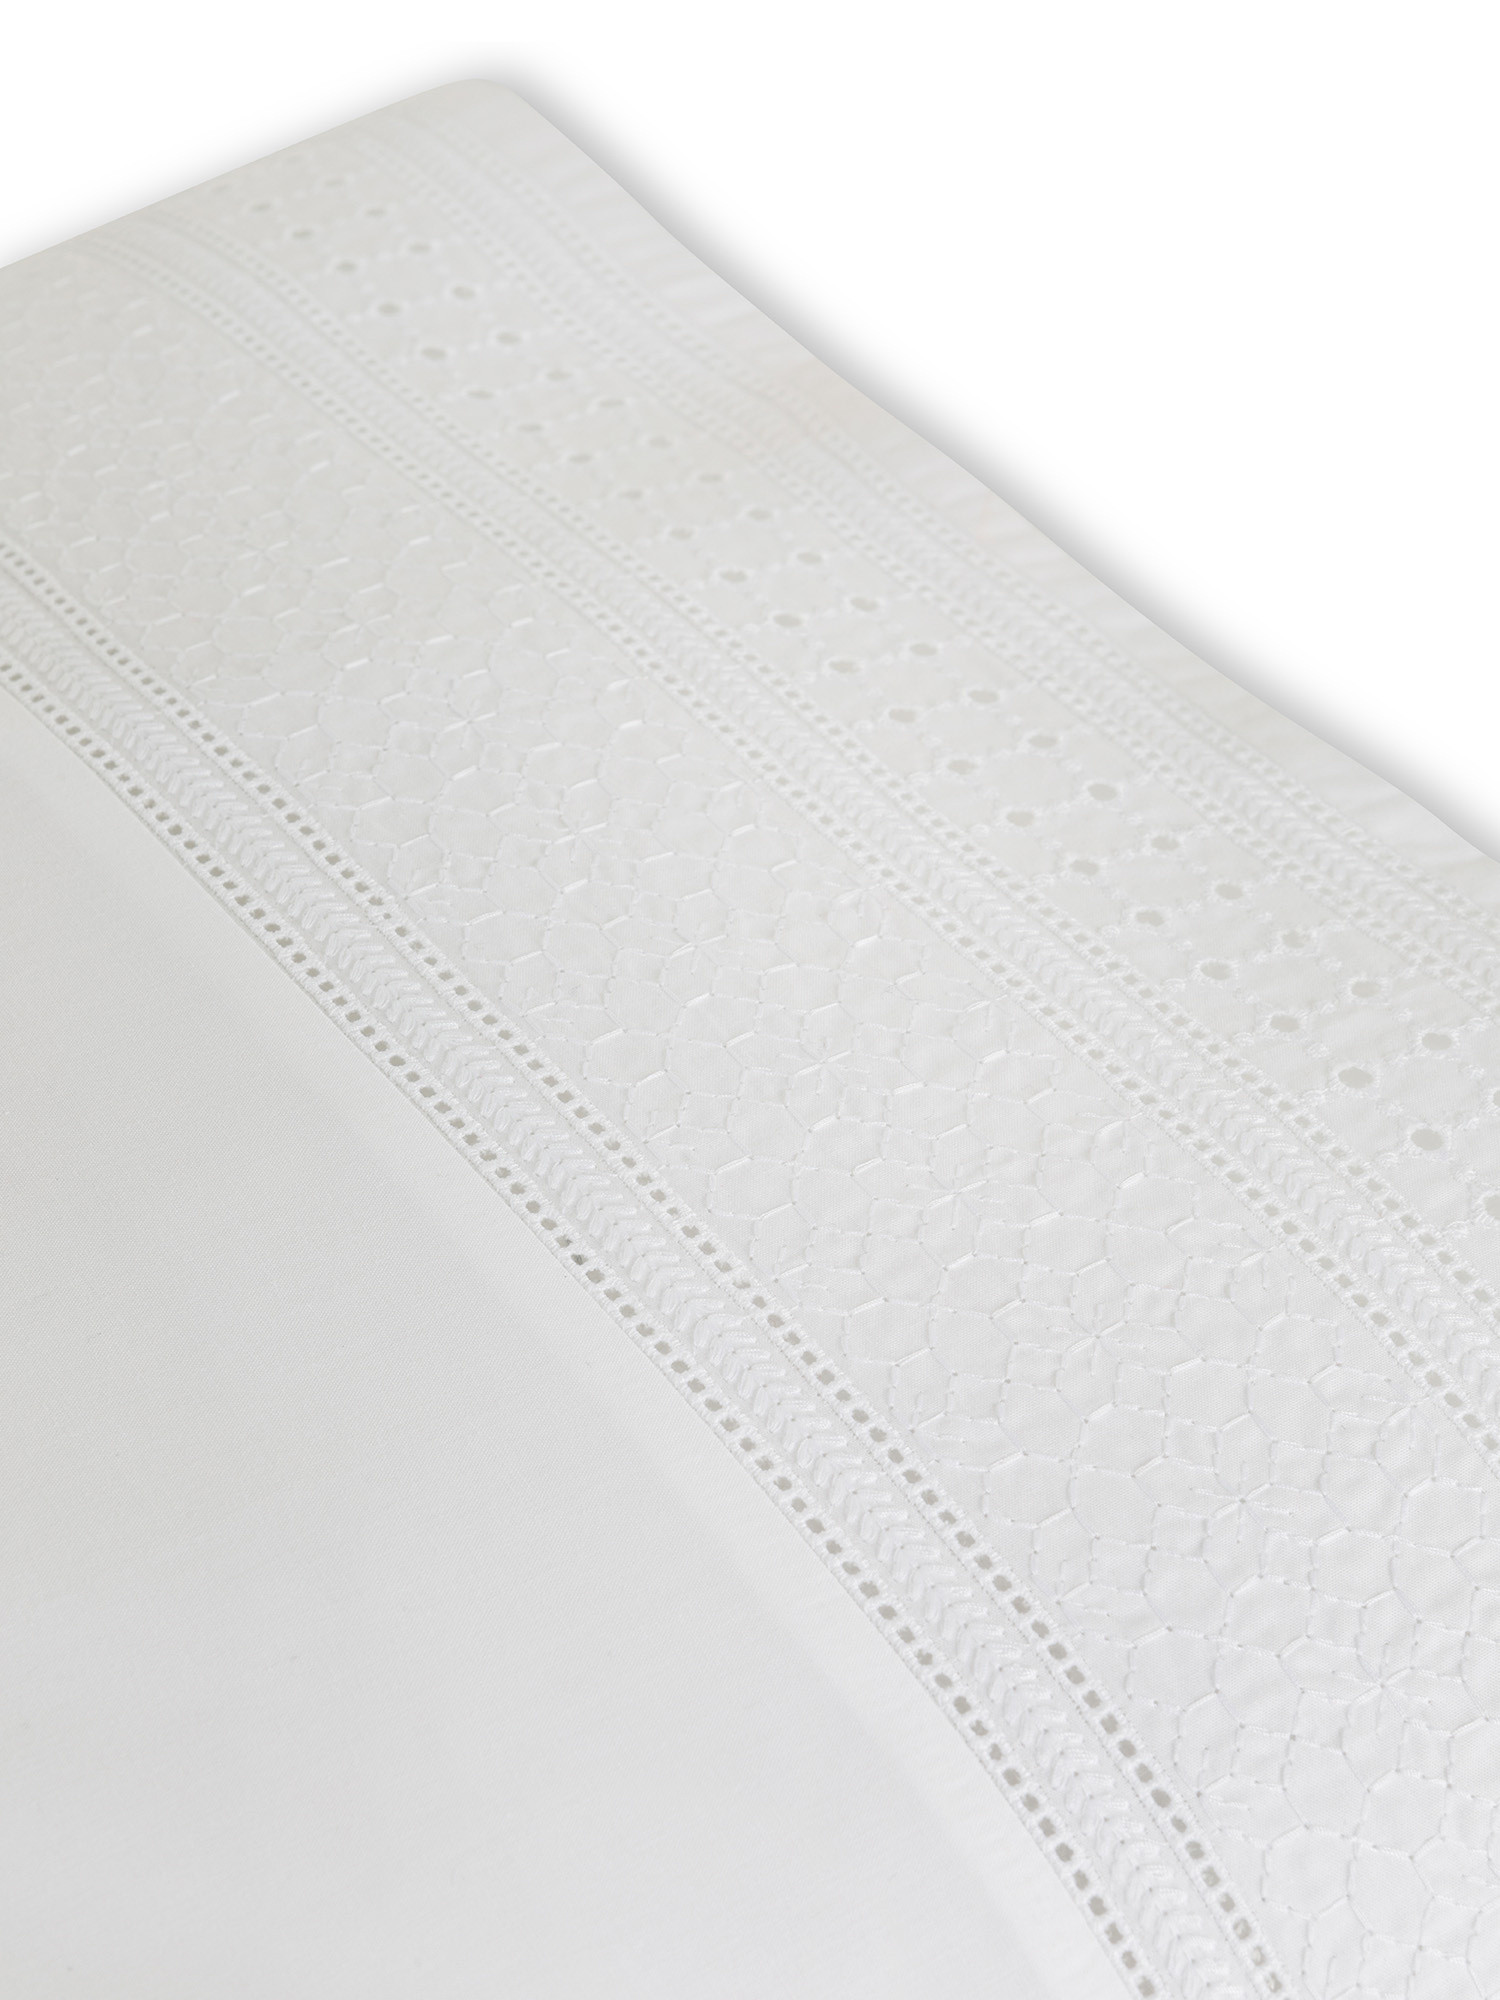 Pillowcase in fine cotton percale Portofino, White, large image number 1